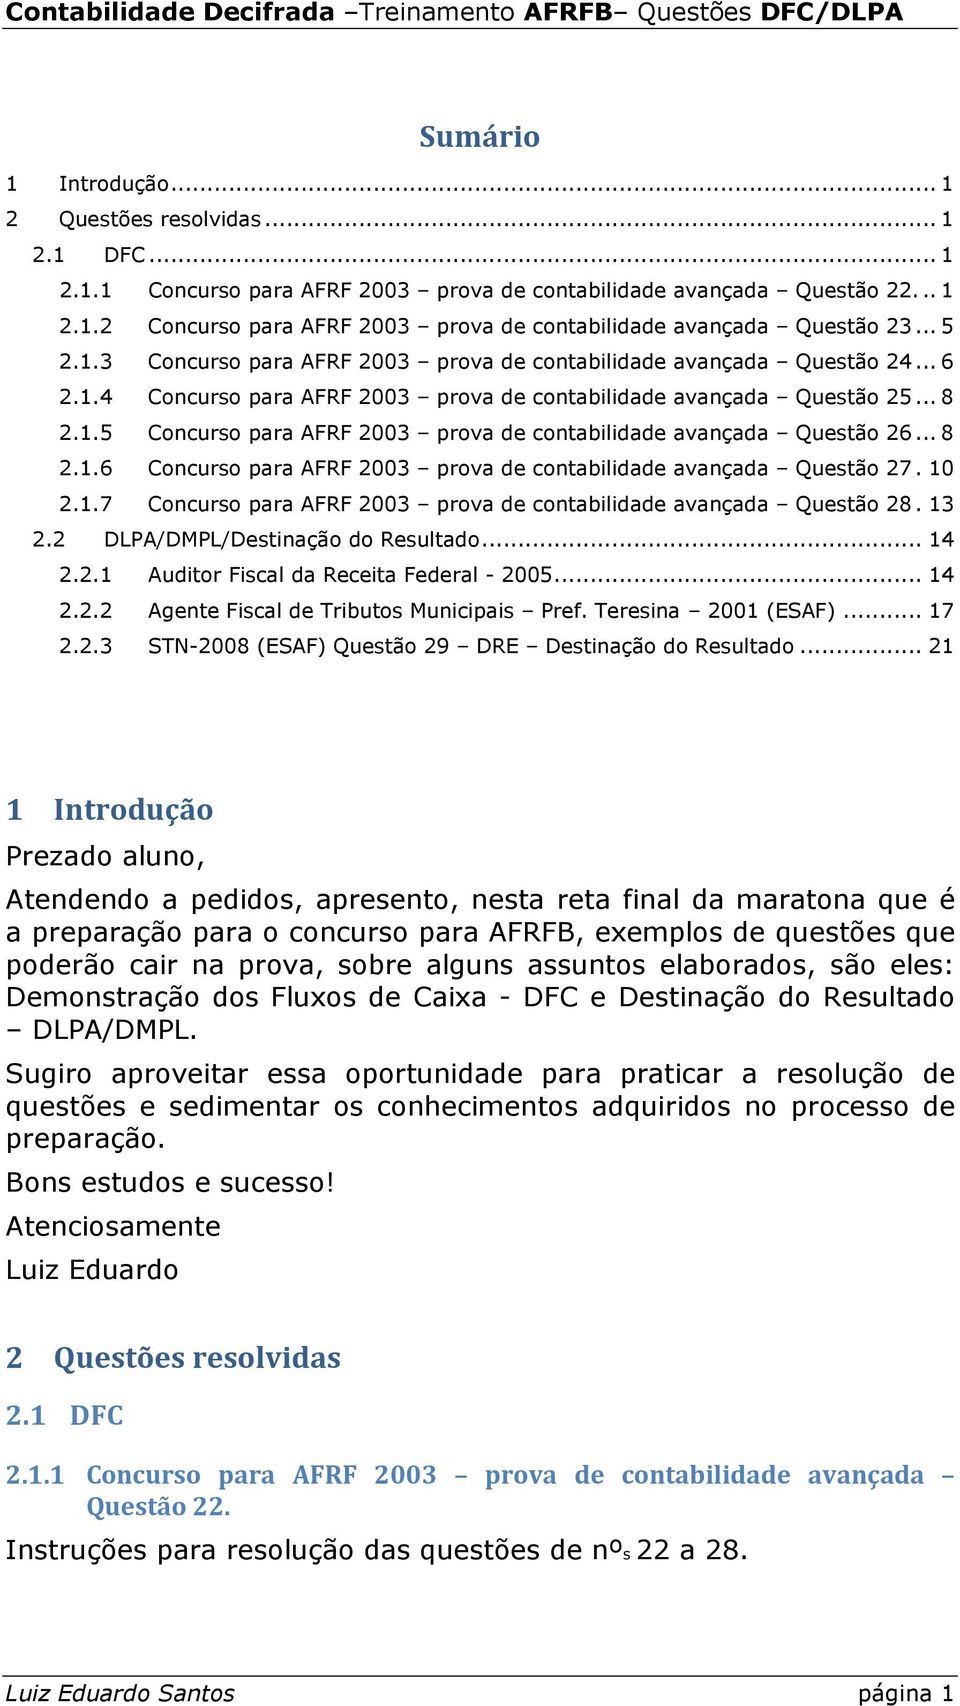 .. 8 2.1.6 Concurso para AFRF 2003 prova de contabilidade avançada Questão 27. 10 2.1.7 Concurso para AFRF 2003 prova de contabilidade avançada Questão 28. 13 2.2 DLPA/DMPL/Destinação do Resultado.